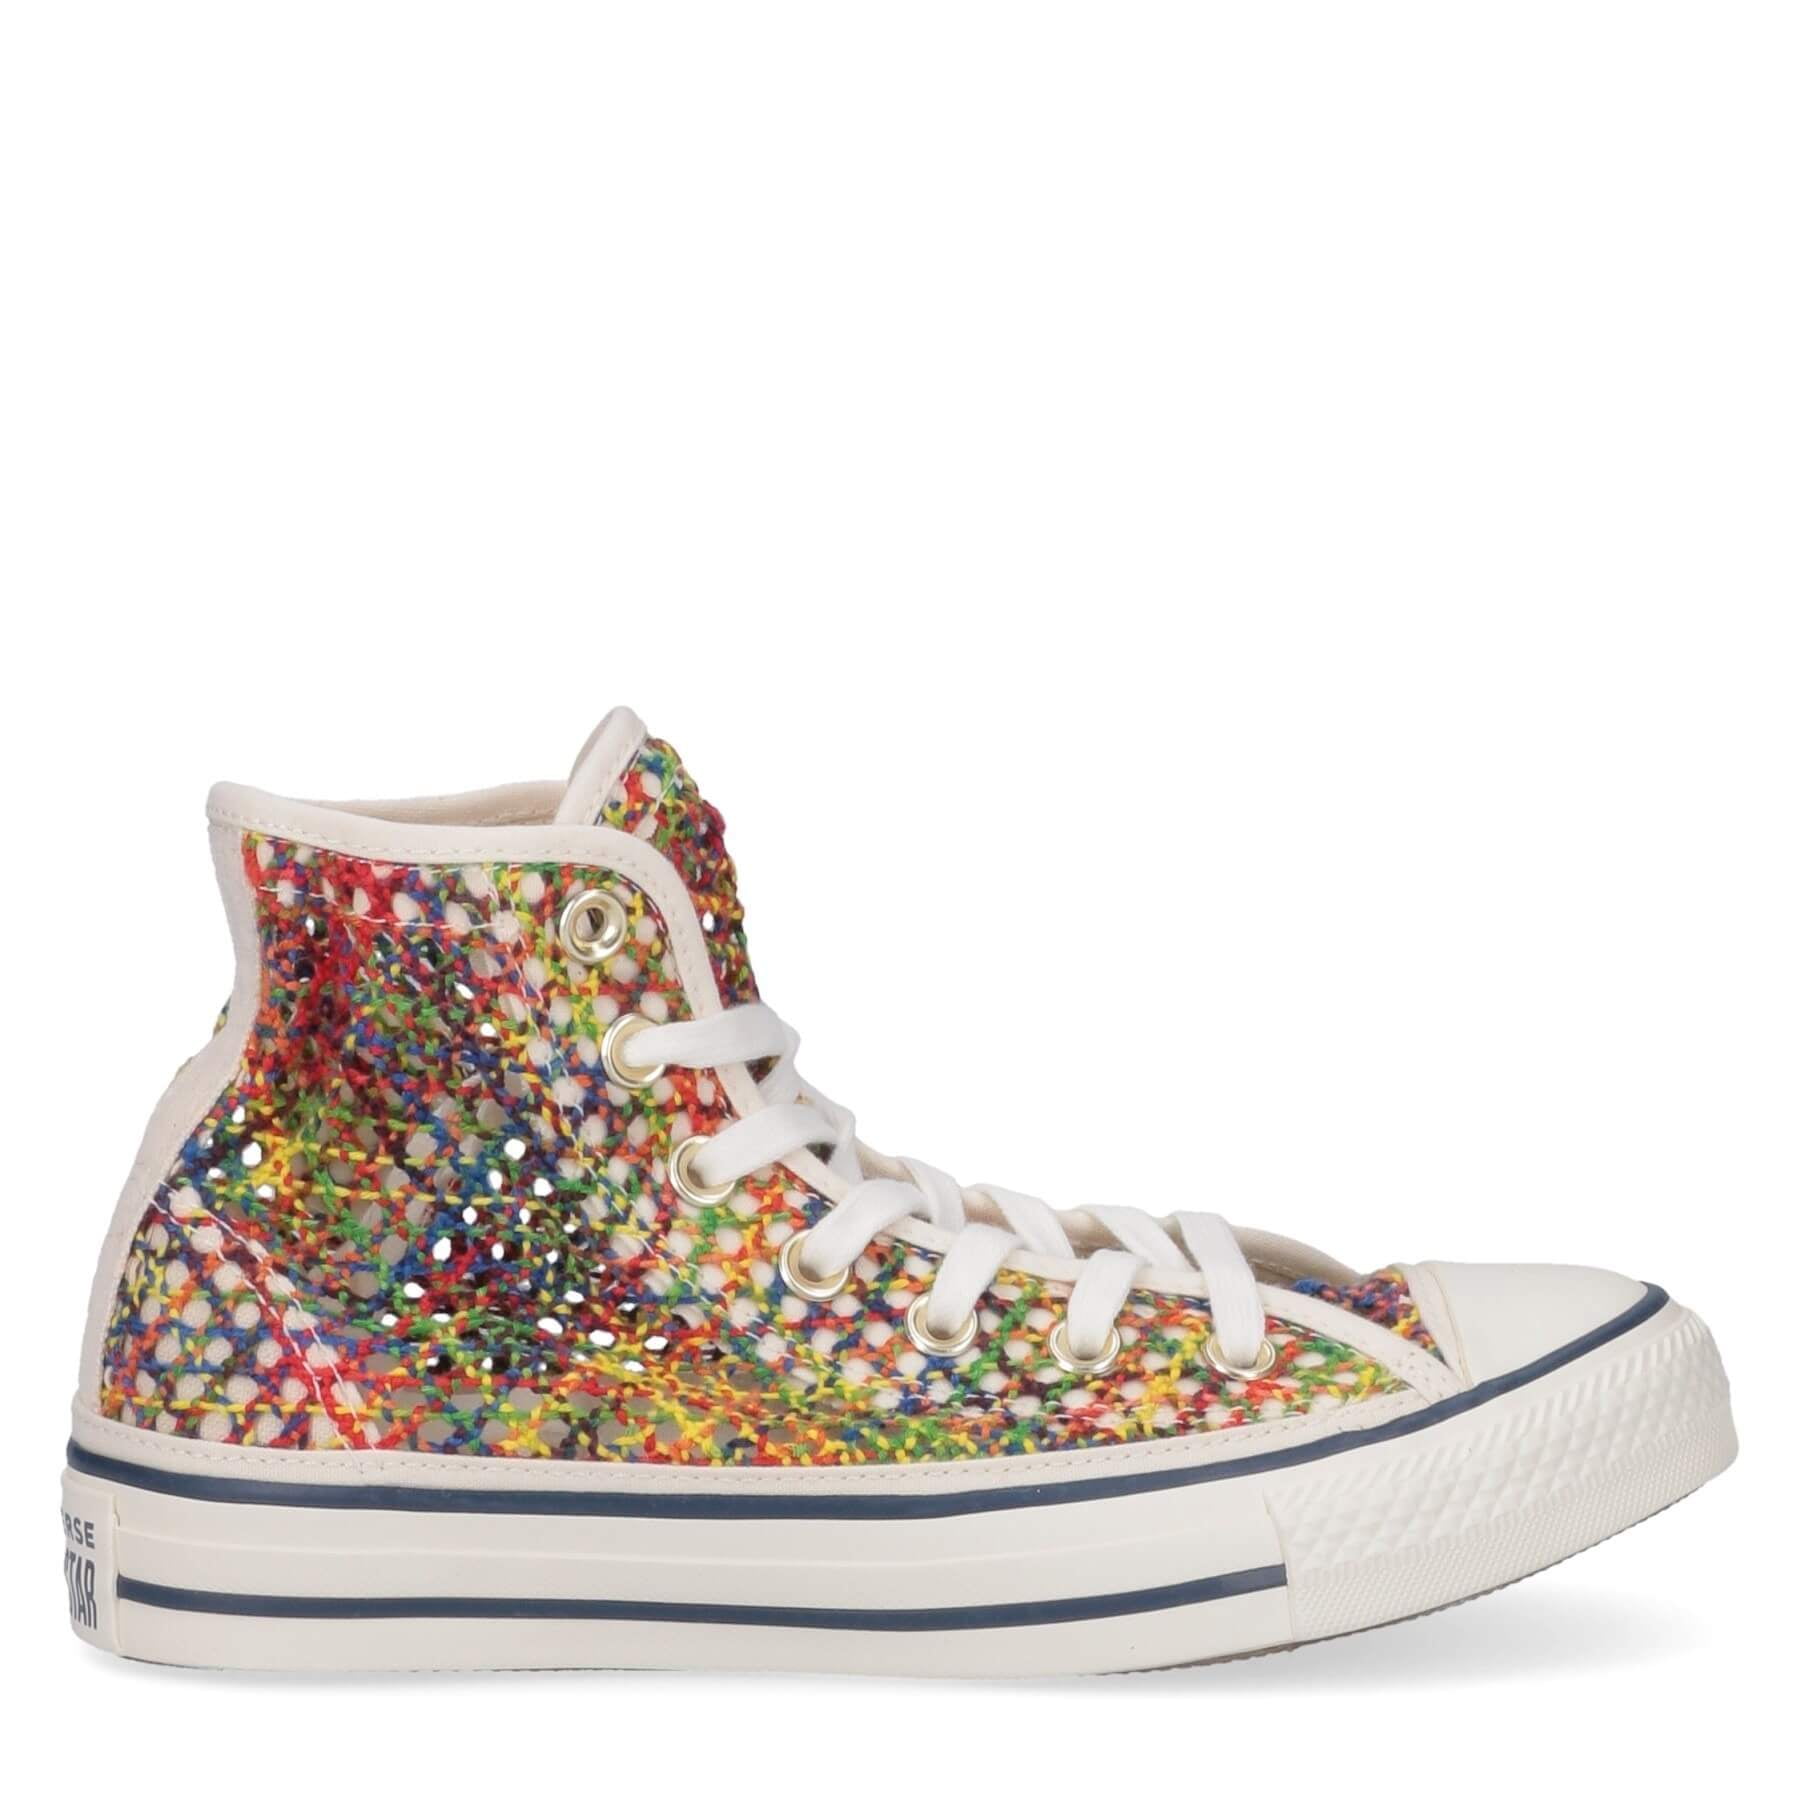 Converse Chuck Taylor Star Ladies Multicolor Canvas Knit Sneakers 6.5 - Walmart.com